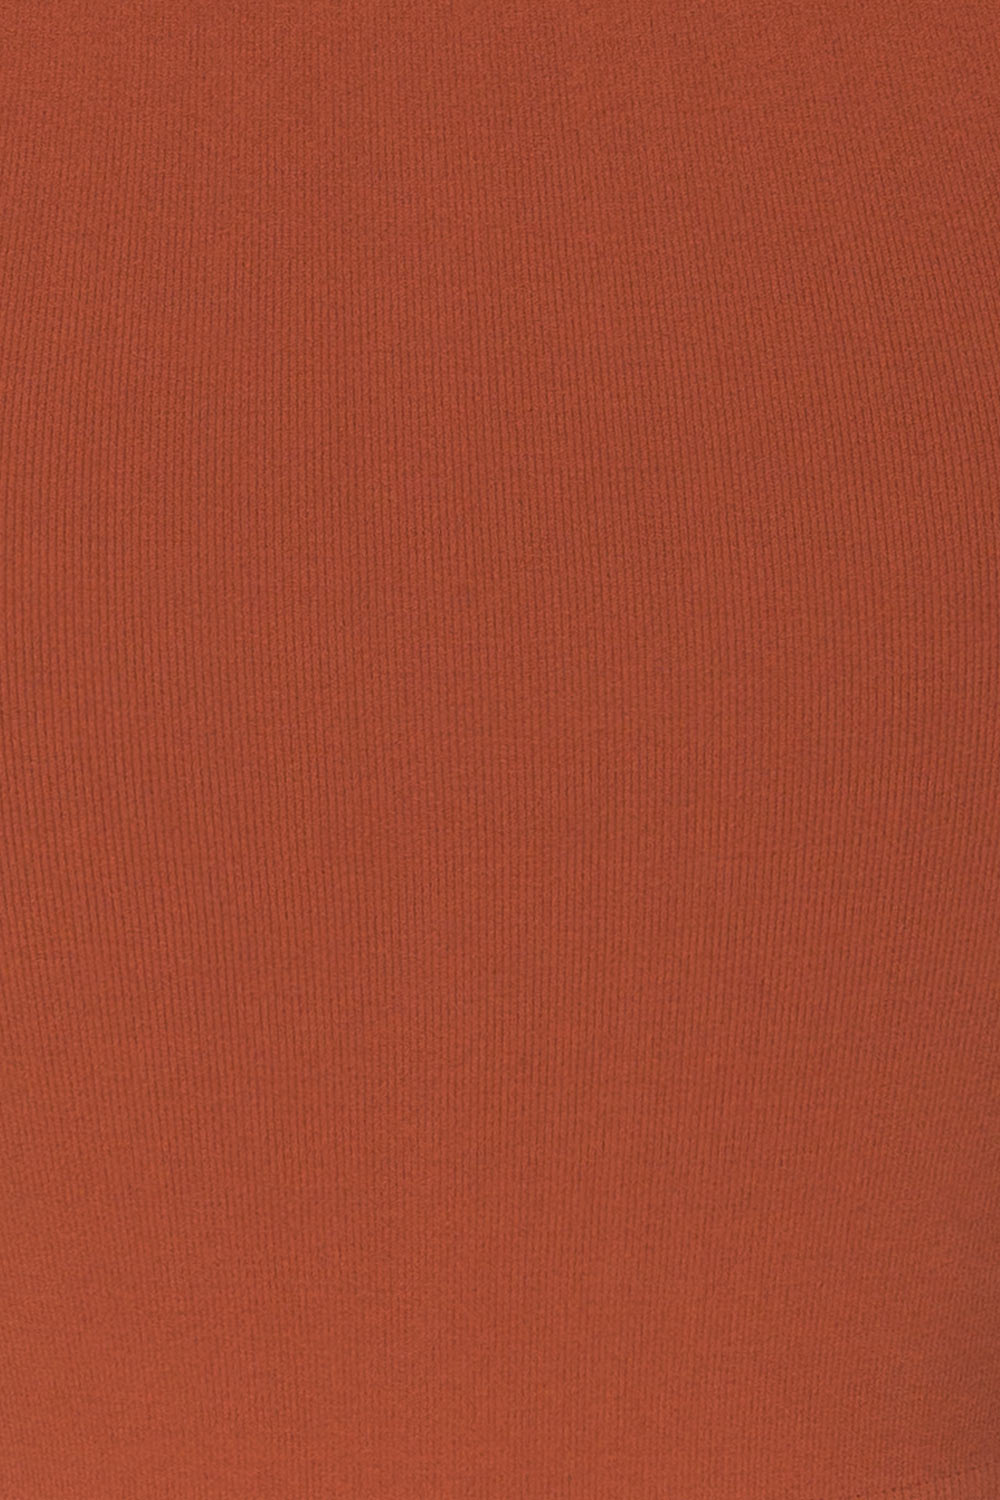 Boath Rust Orange Round Neck Cami | La petite garçonne fabric 